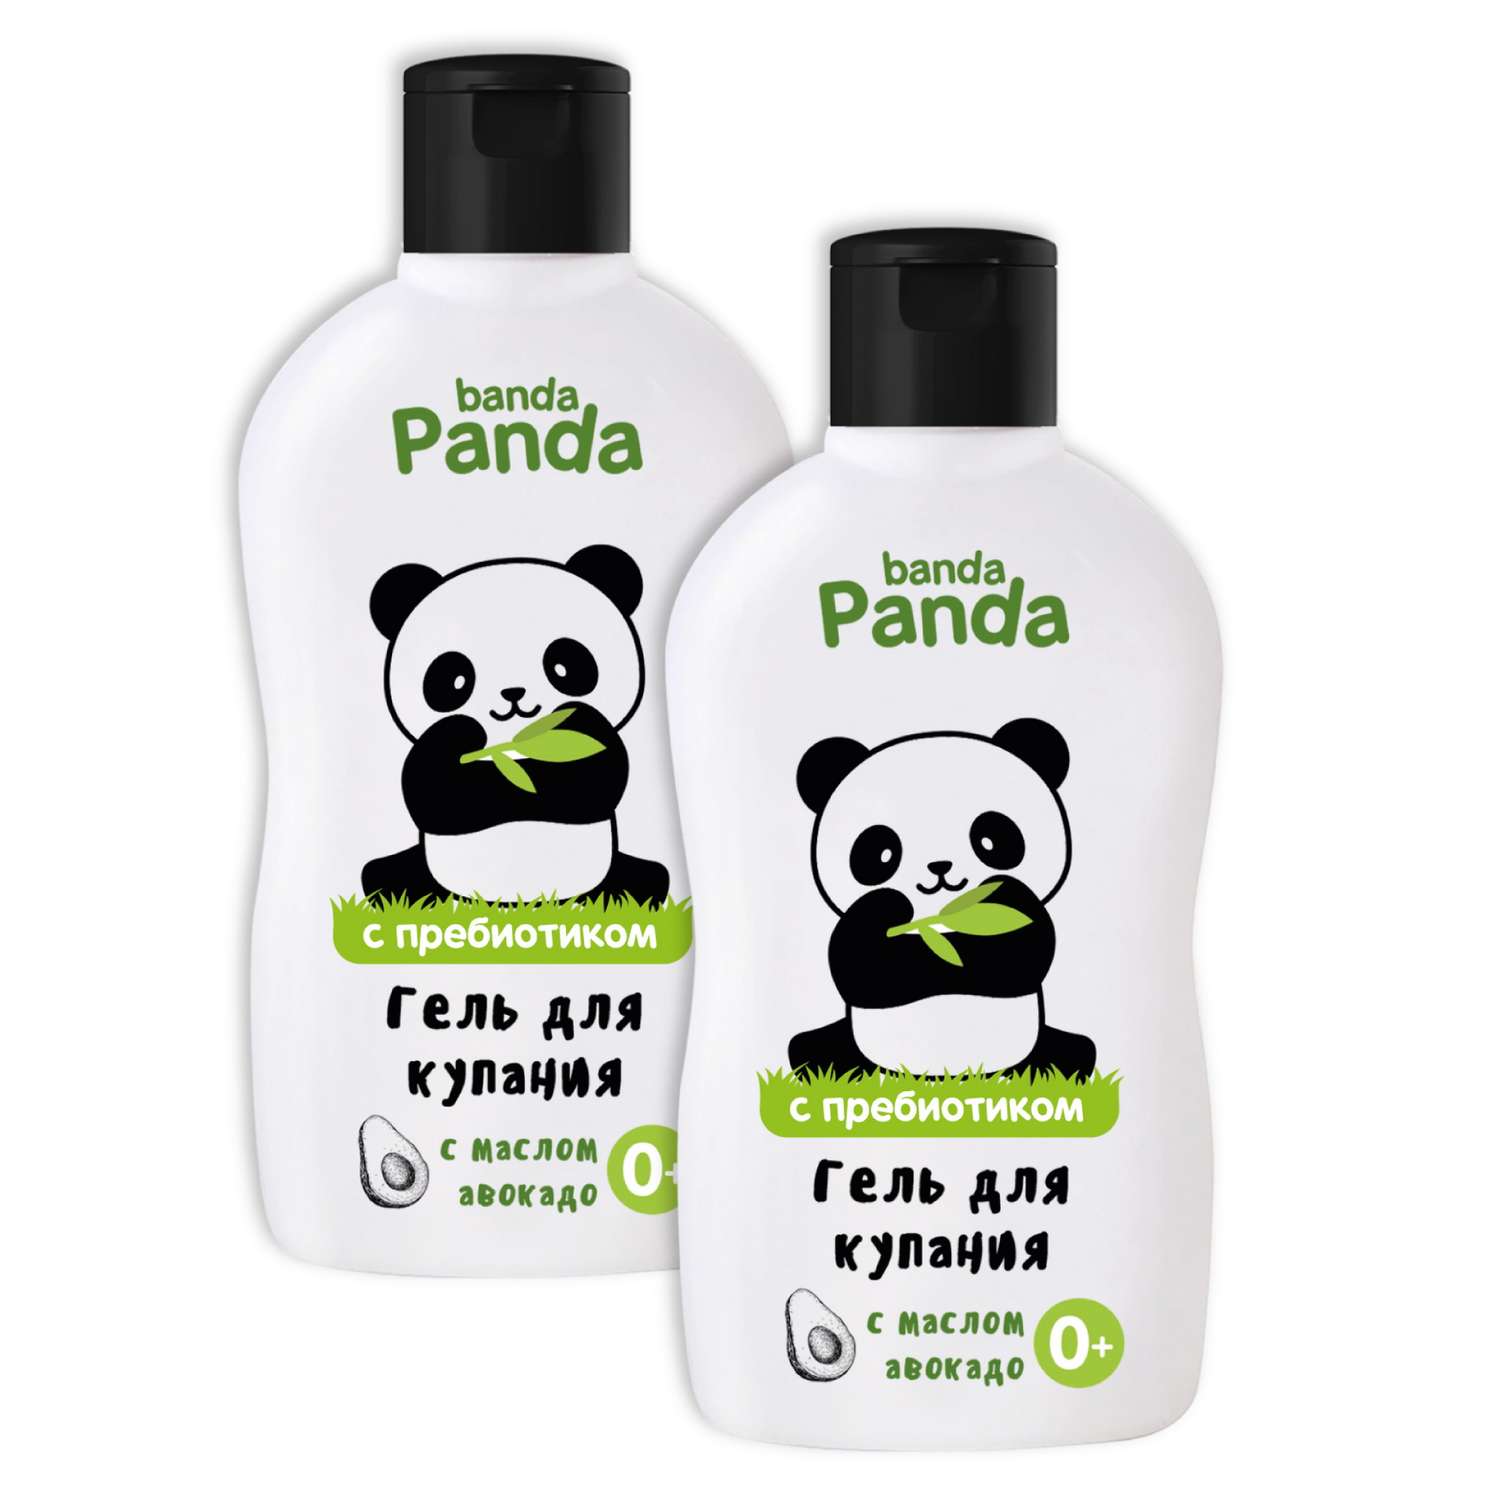 Детский гель для купания banda Panda 2 шт по 250 мл с маслом авокадо с пребиотиком - фото 2